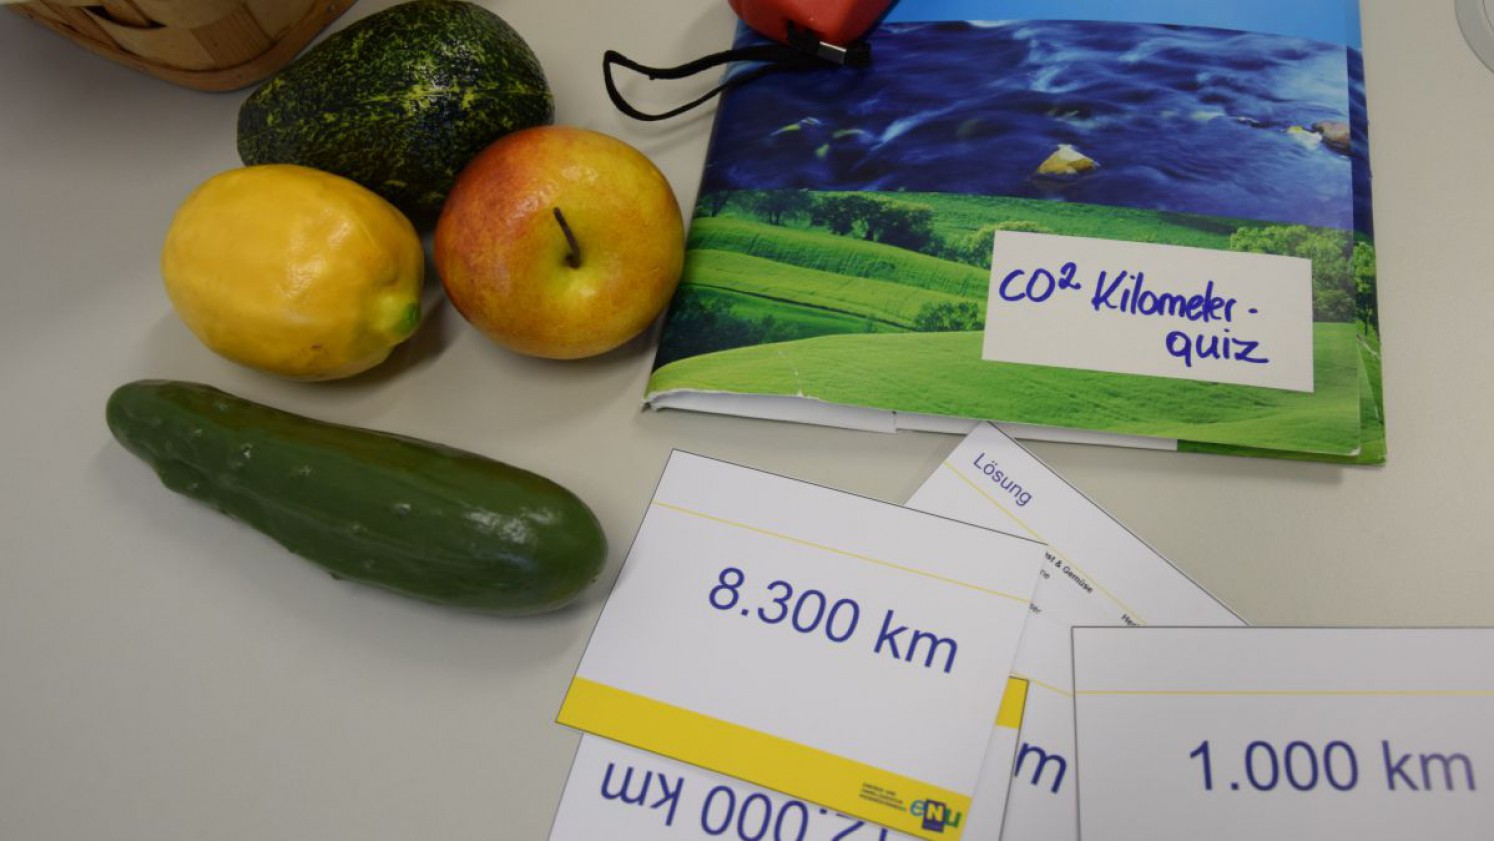 CO2 Transportkilometer Quiz Kärtchen zum Erforschen der Herkunft der Lebensmittel